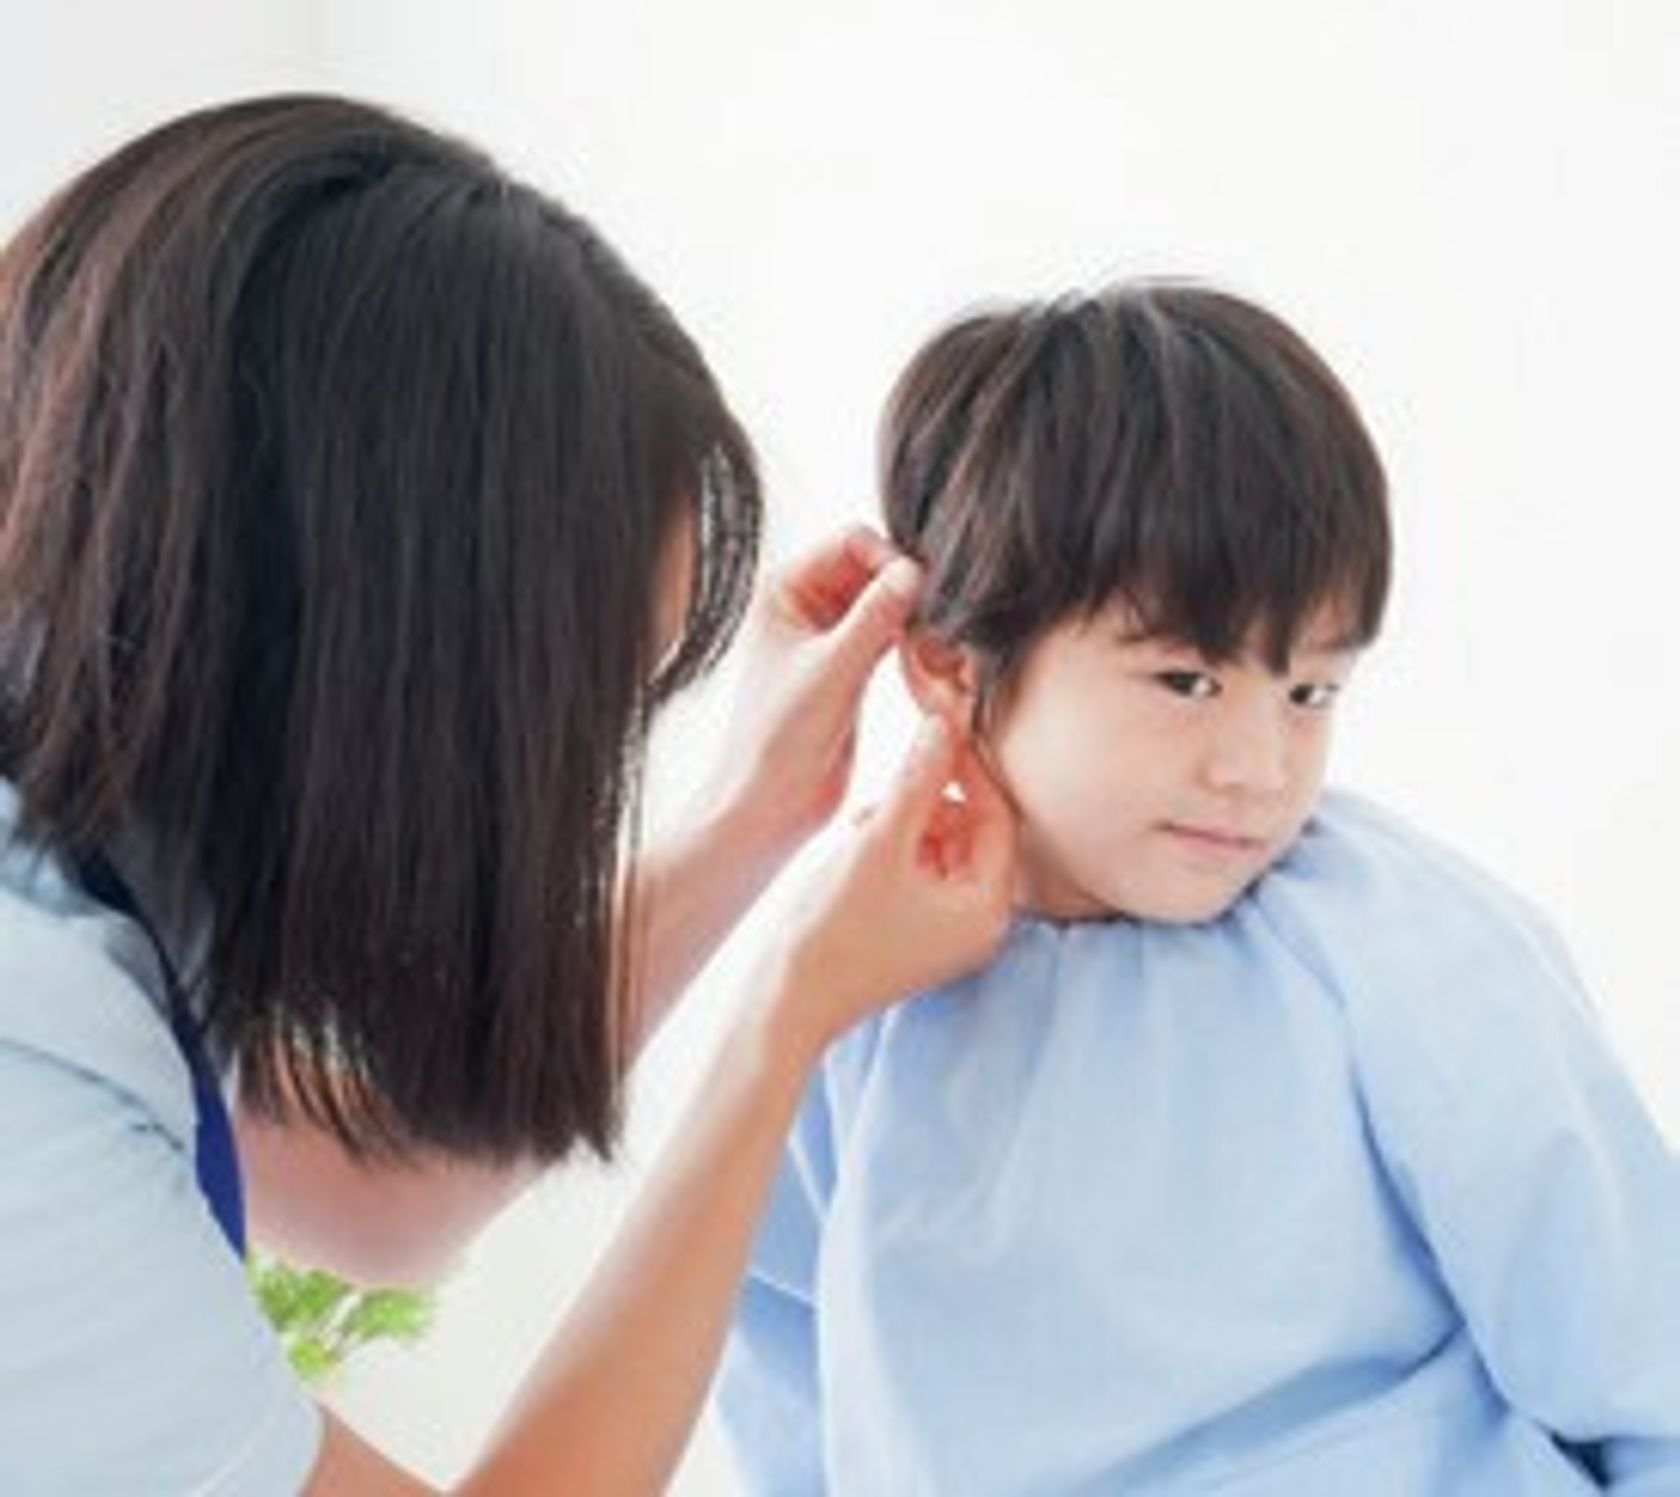 Ärztin untersucht Jungen am Ohr